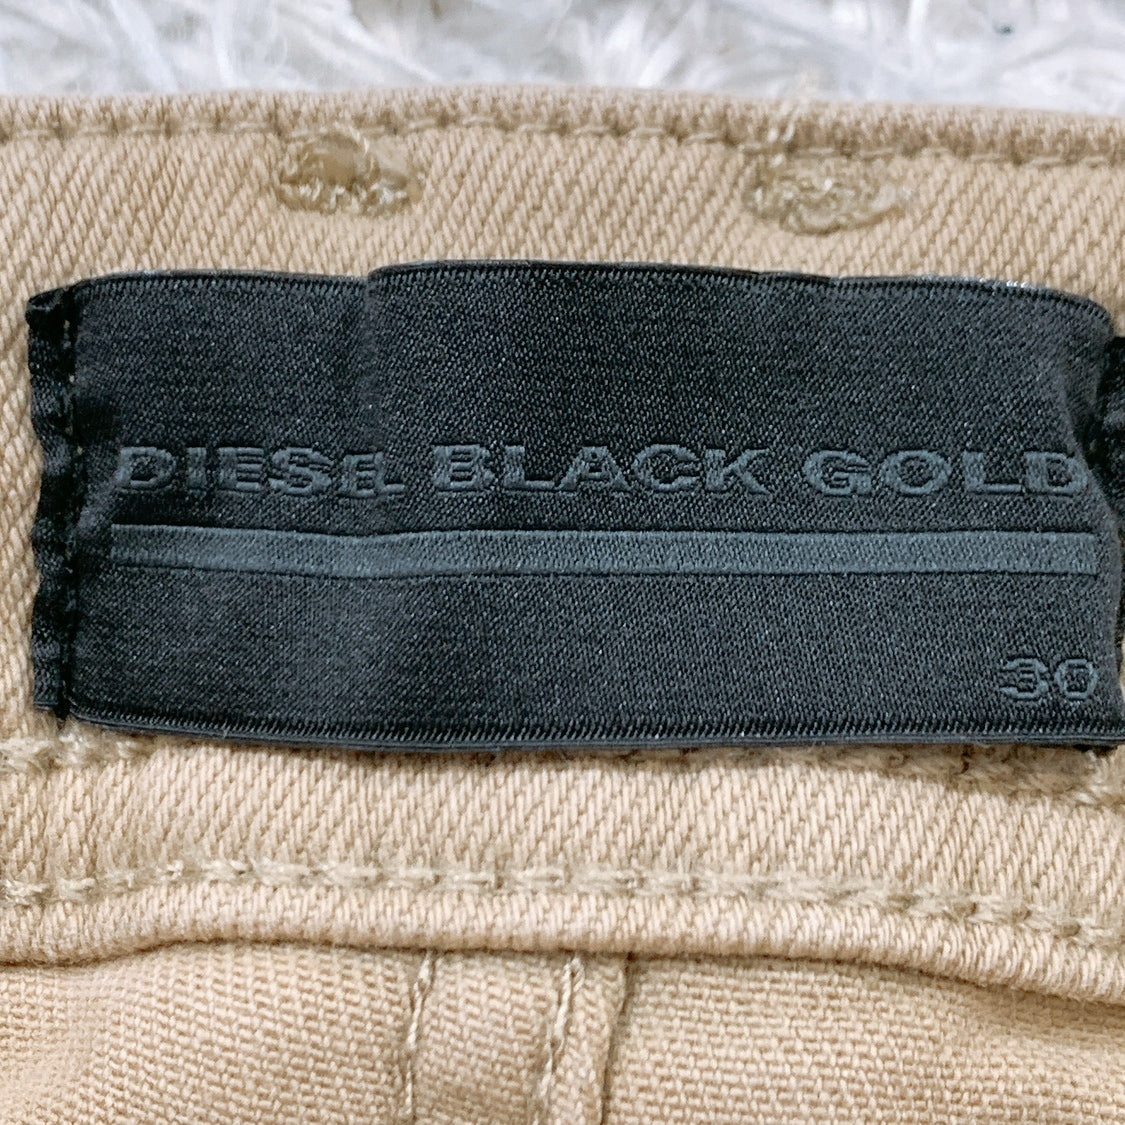 新品 メンズ30 DIESEL BLACK GOLD カジュアルパンツ シンプル 無地 ベージュ タグ付き ディーゼル ブラック ゴールド 【14626】